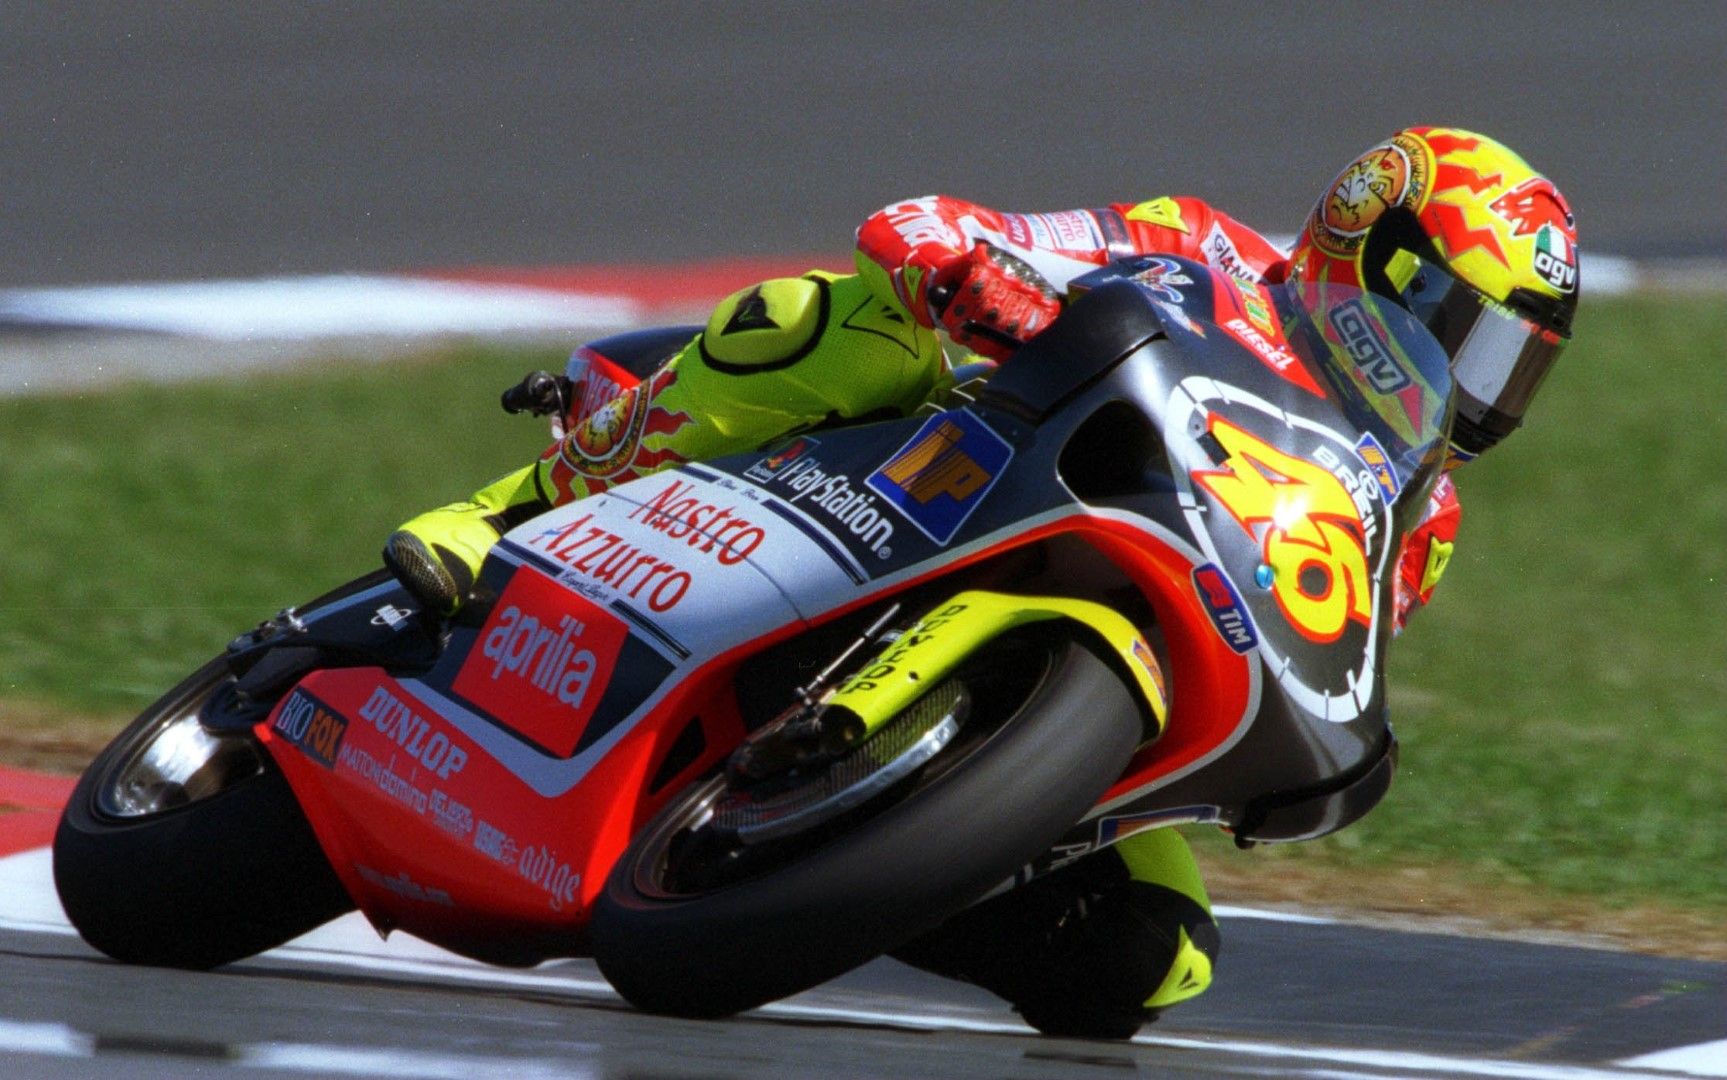 2001 г., Валентино вече е ас в 500-кубиковия клас, който година по-късно става Moto GP